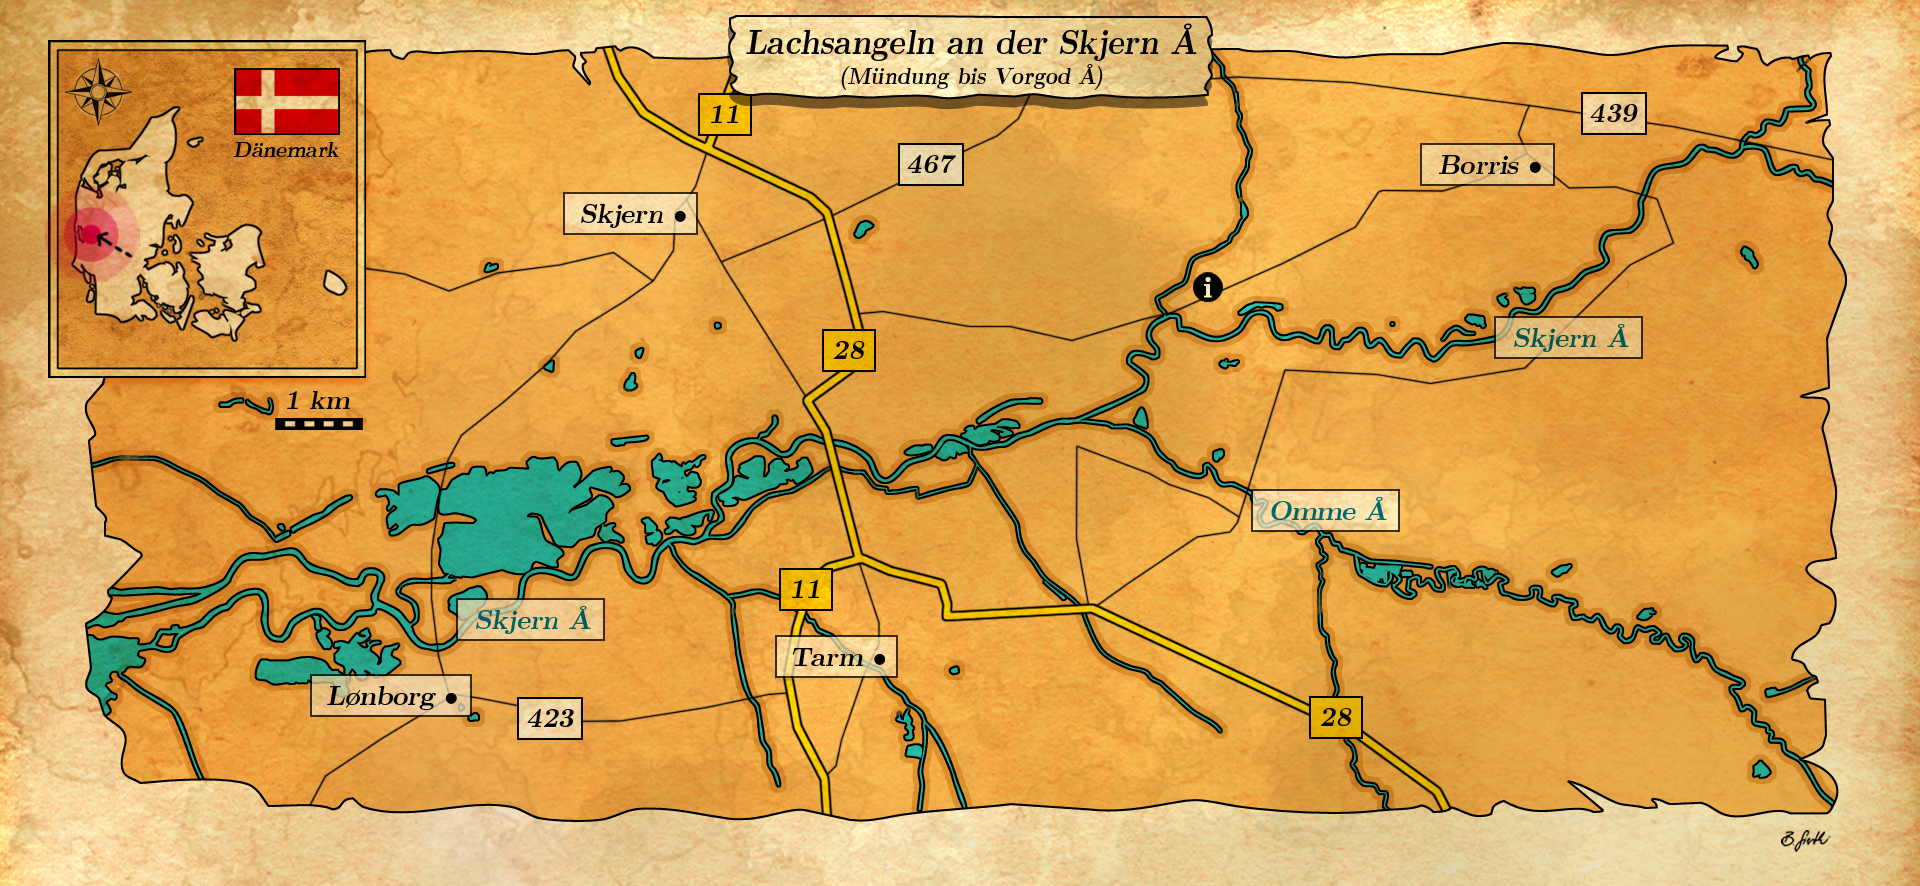 Karte über Lachsangeln an der Skjern Au